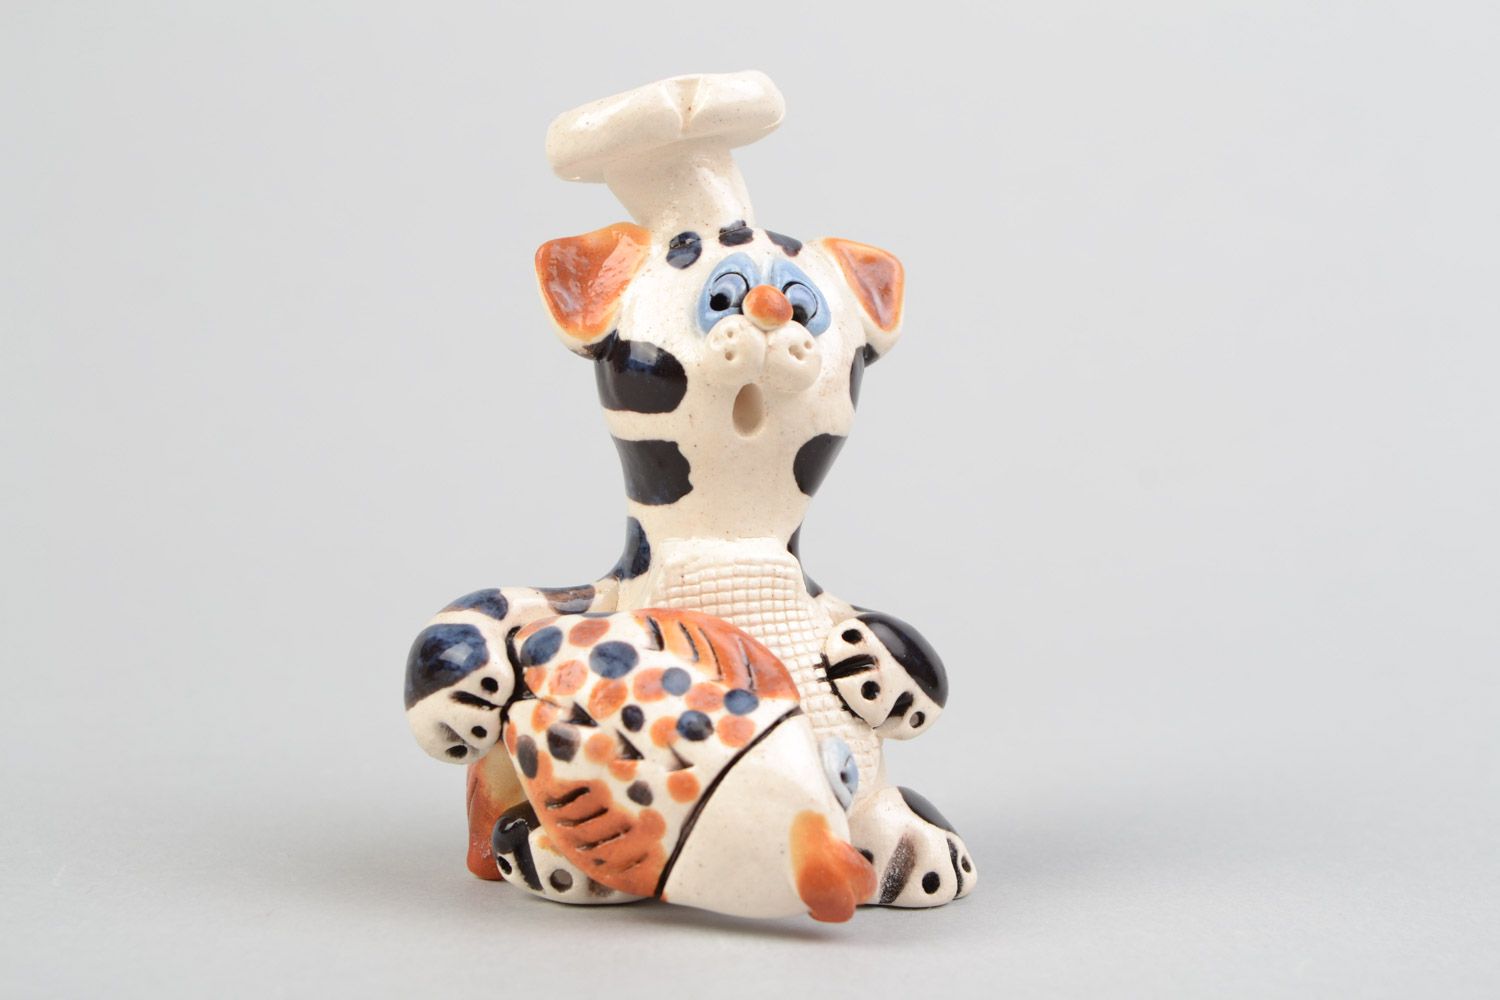 Авторская расписанная глазурью глиняная фигурка кота повара ручной работы фото 1